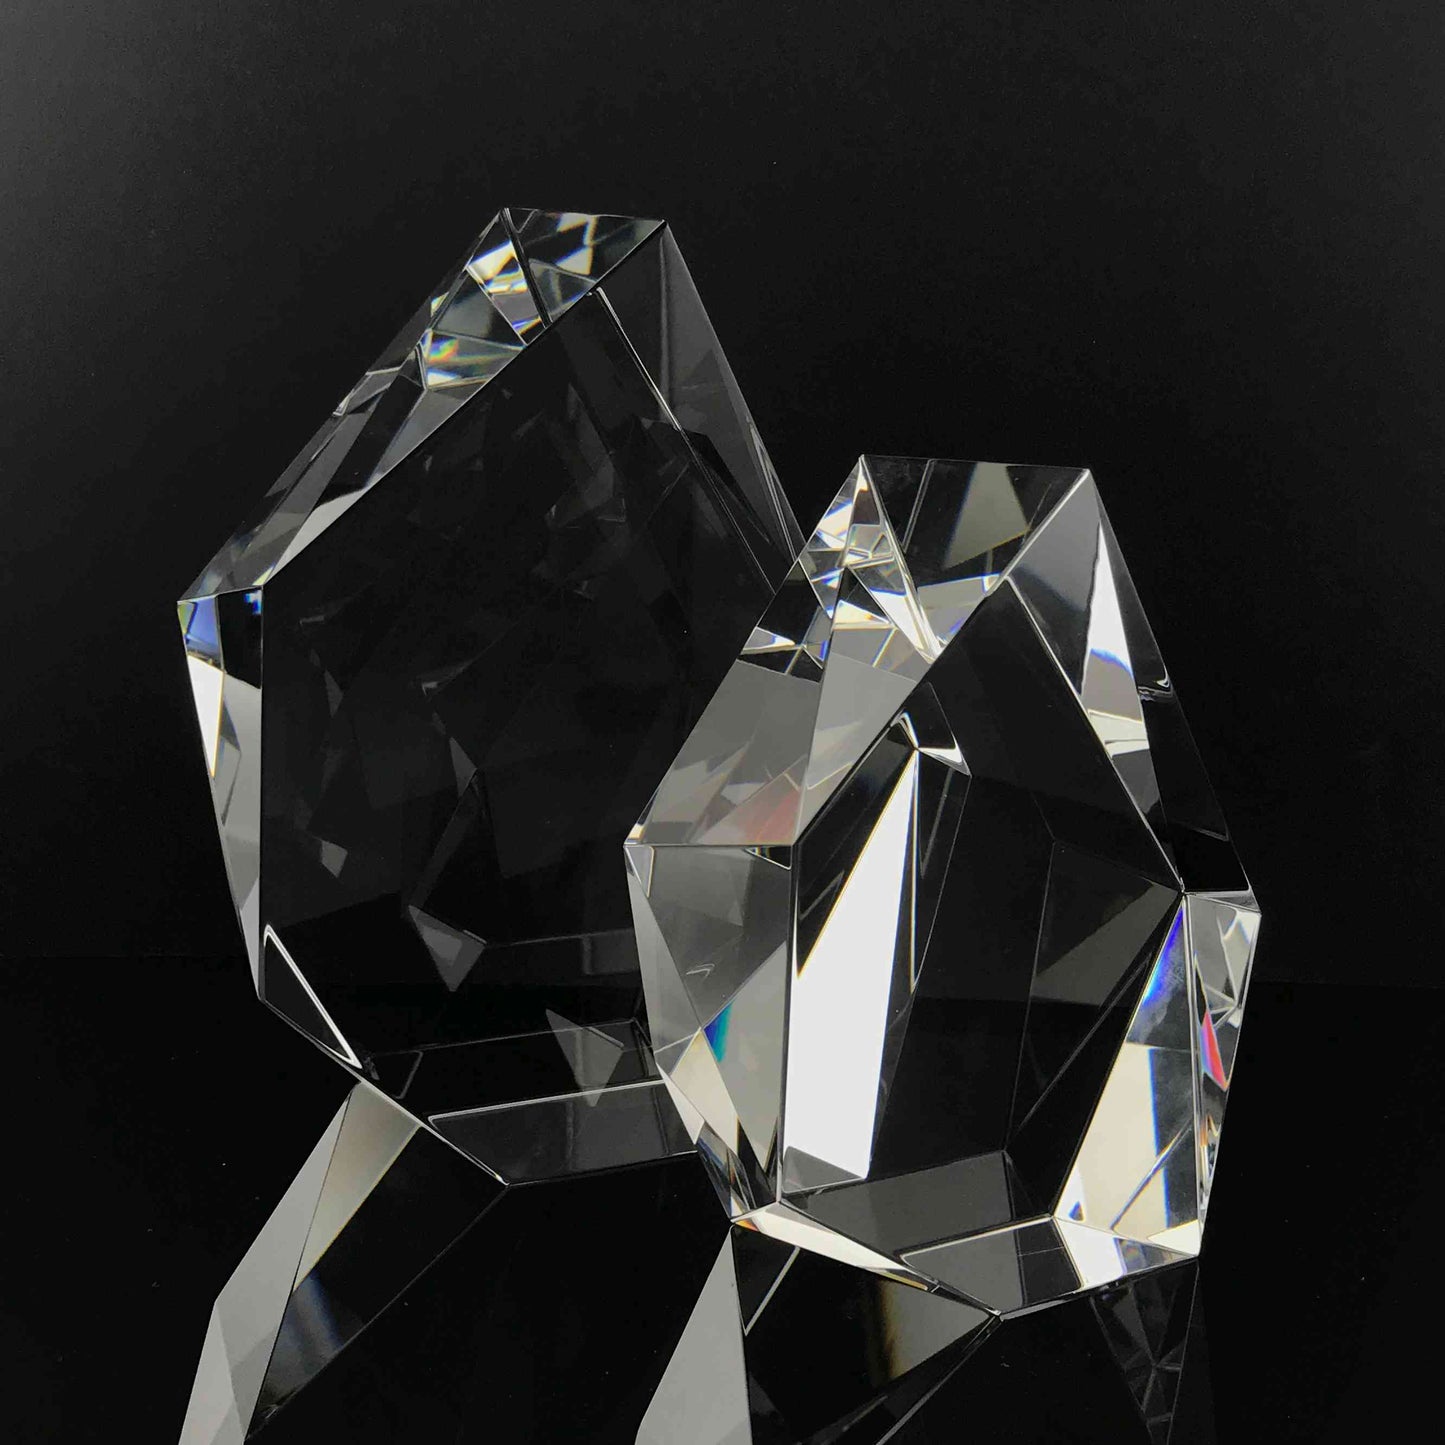 Iceberg Crystal Award